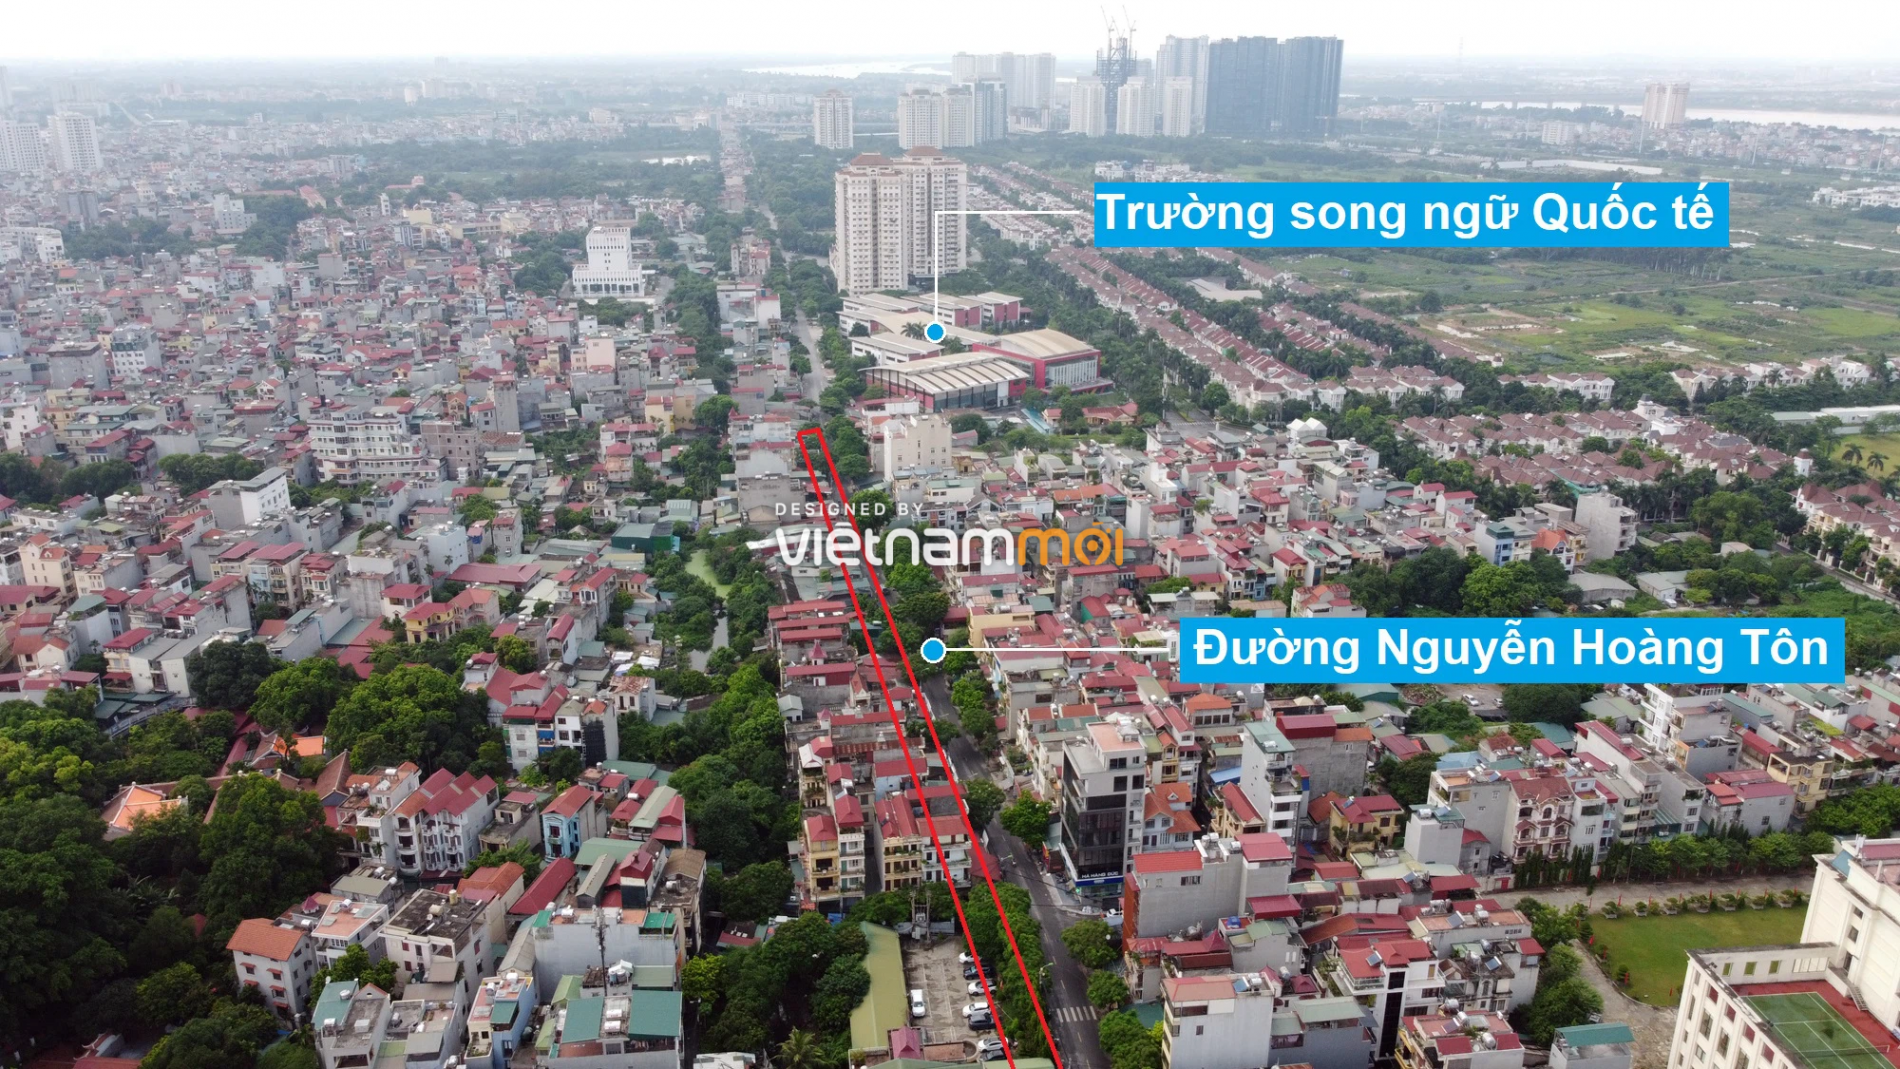 Những khu đất sắp thu hồi để mở đường ở quận Tây Hồ, Hà Nội (phần 1) - Ảnh 17.